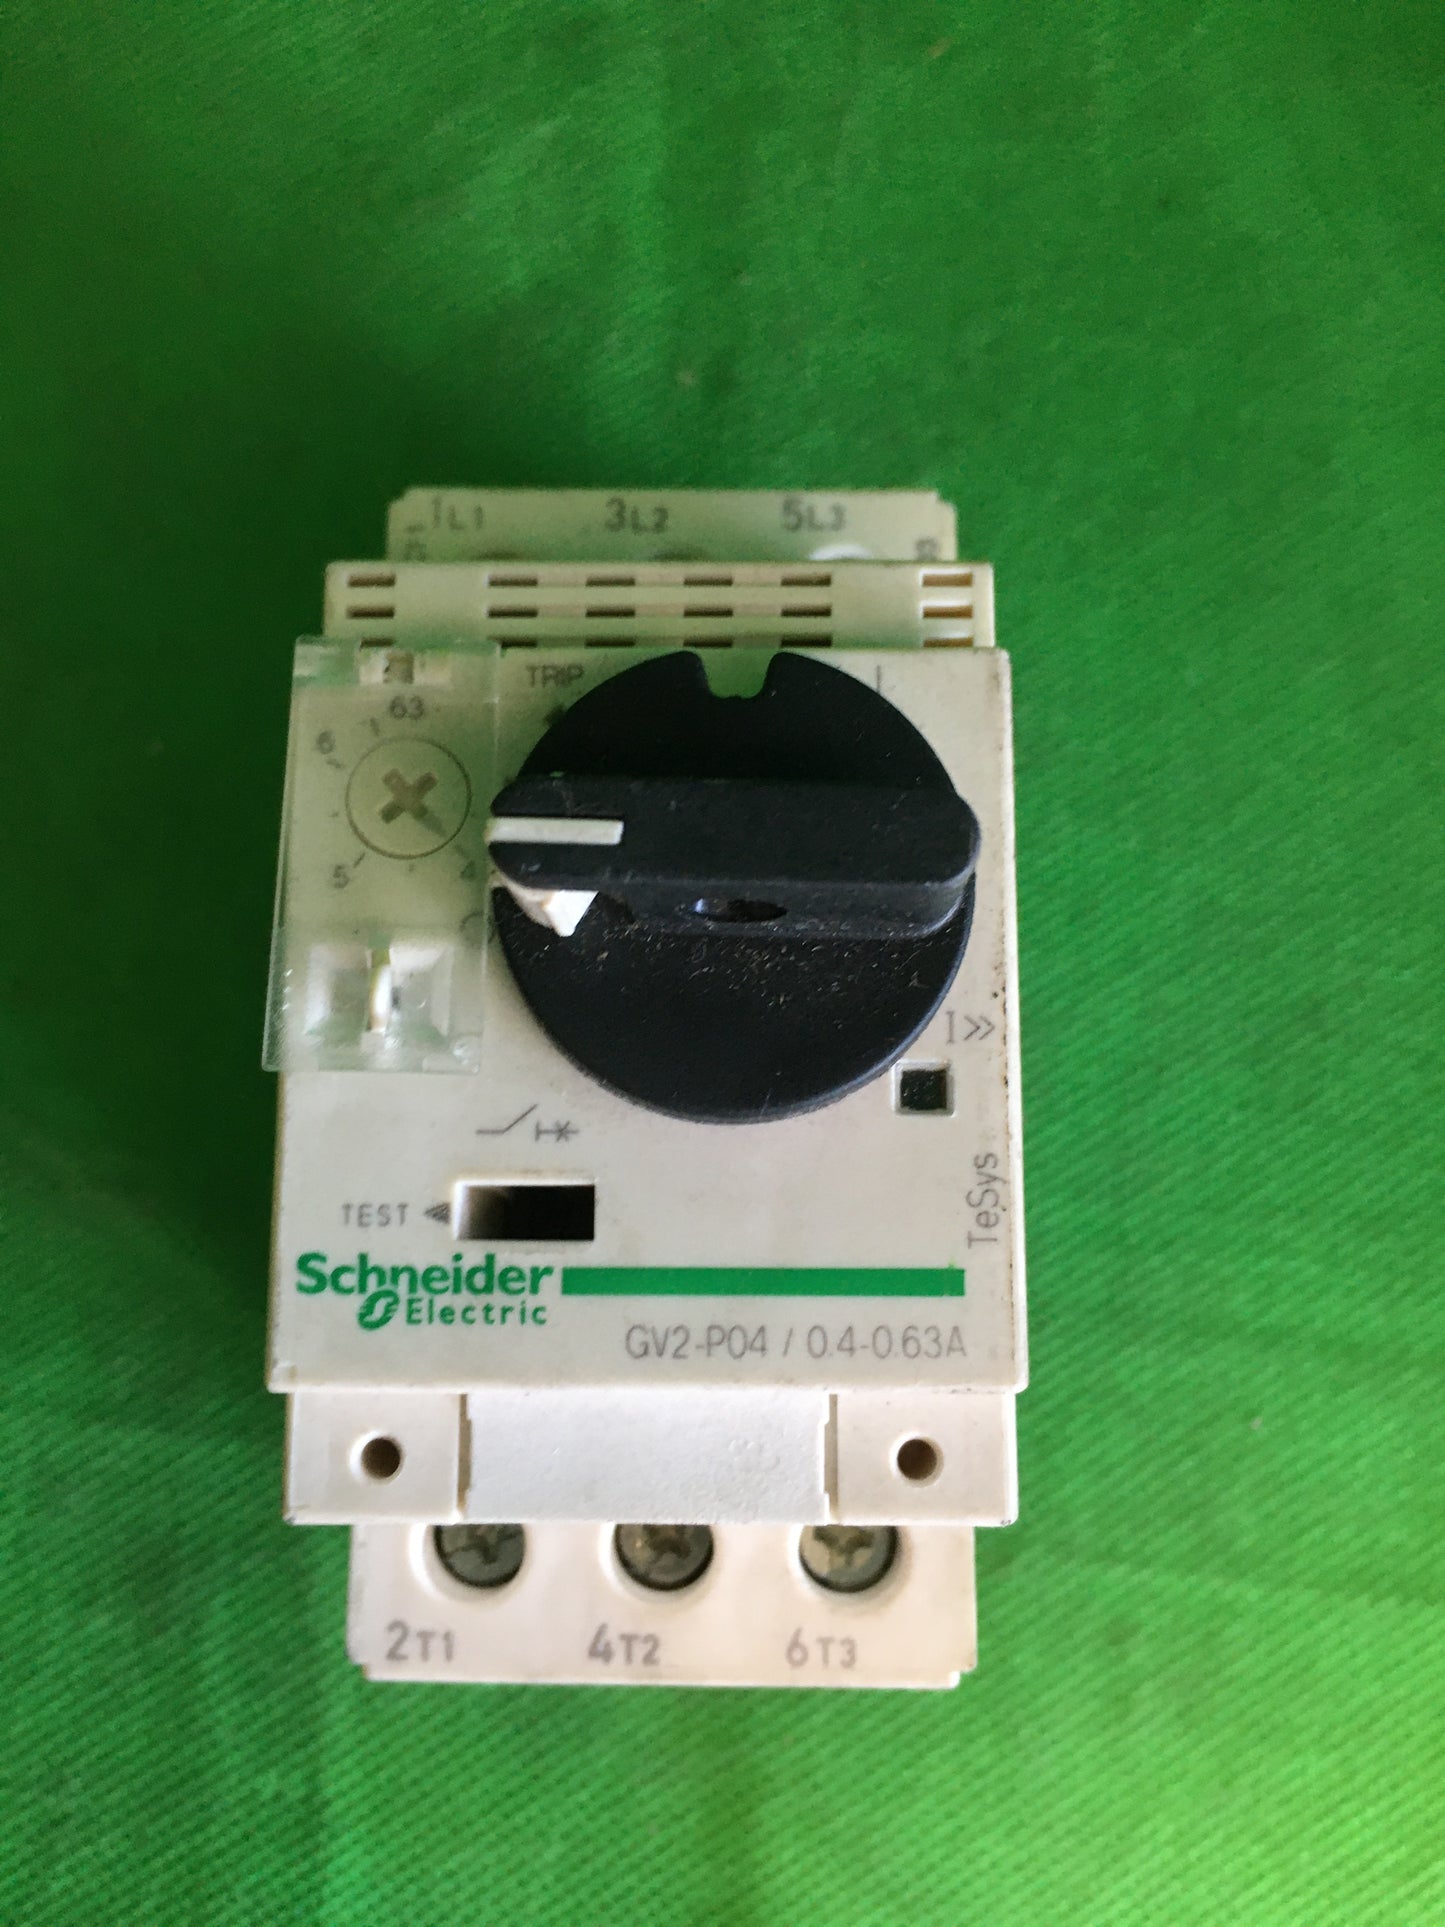 Schneider Electric-GV2-P04 0 4-0.63A/GV2P0404063A